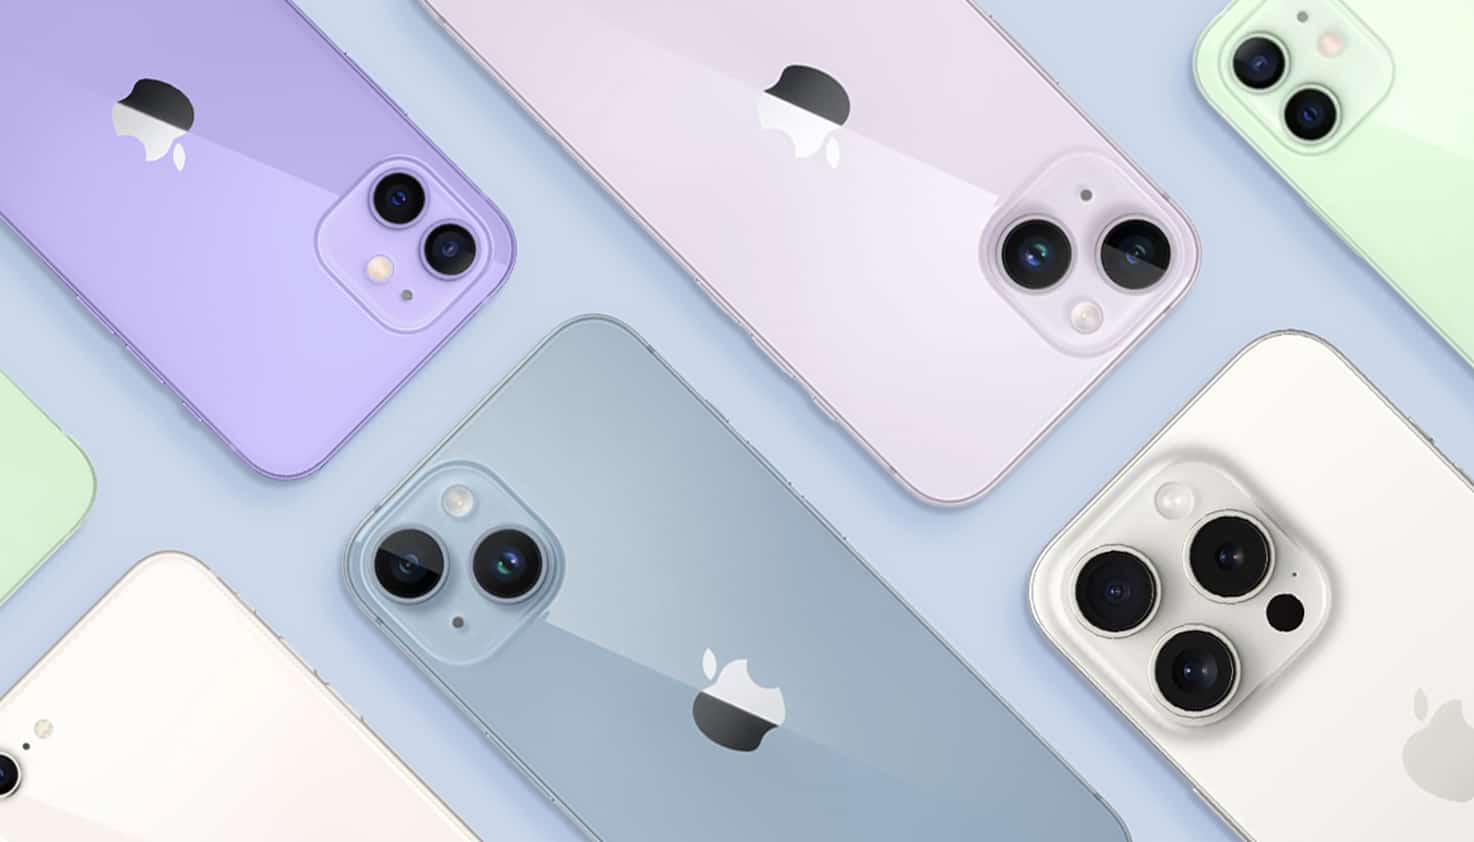 Een flatlay van verschillende iPhone modellen in diverse kleuren.